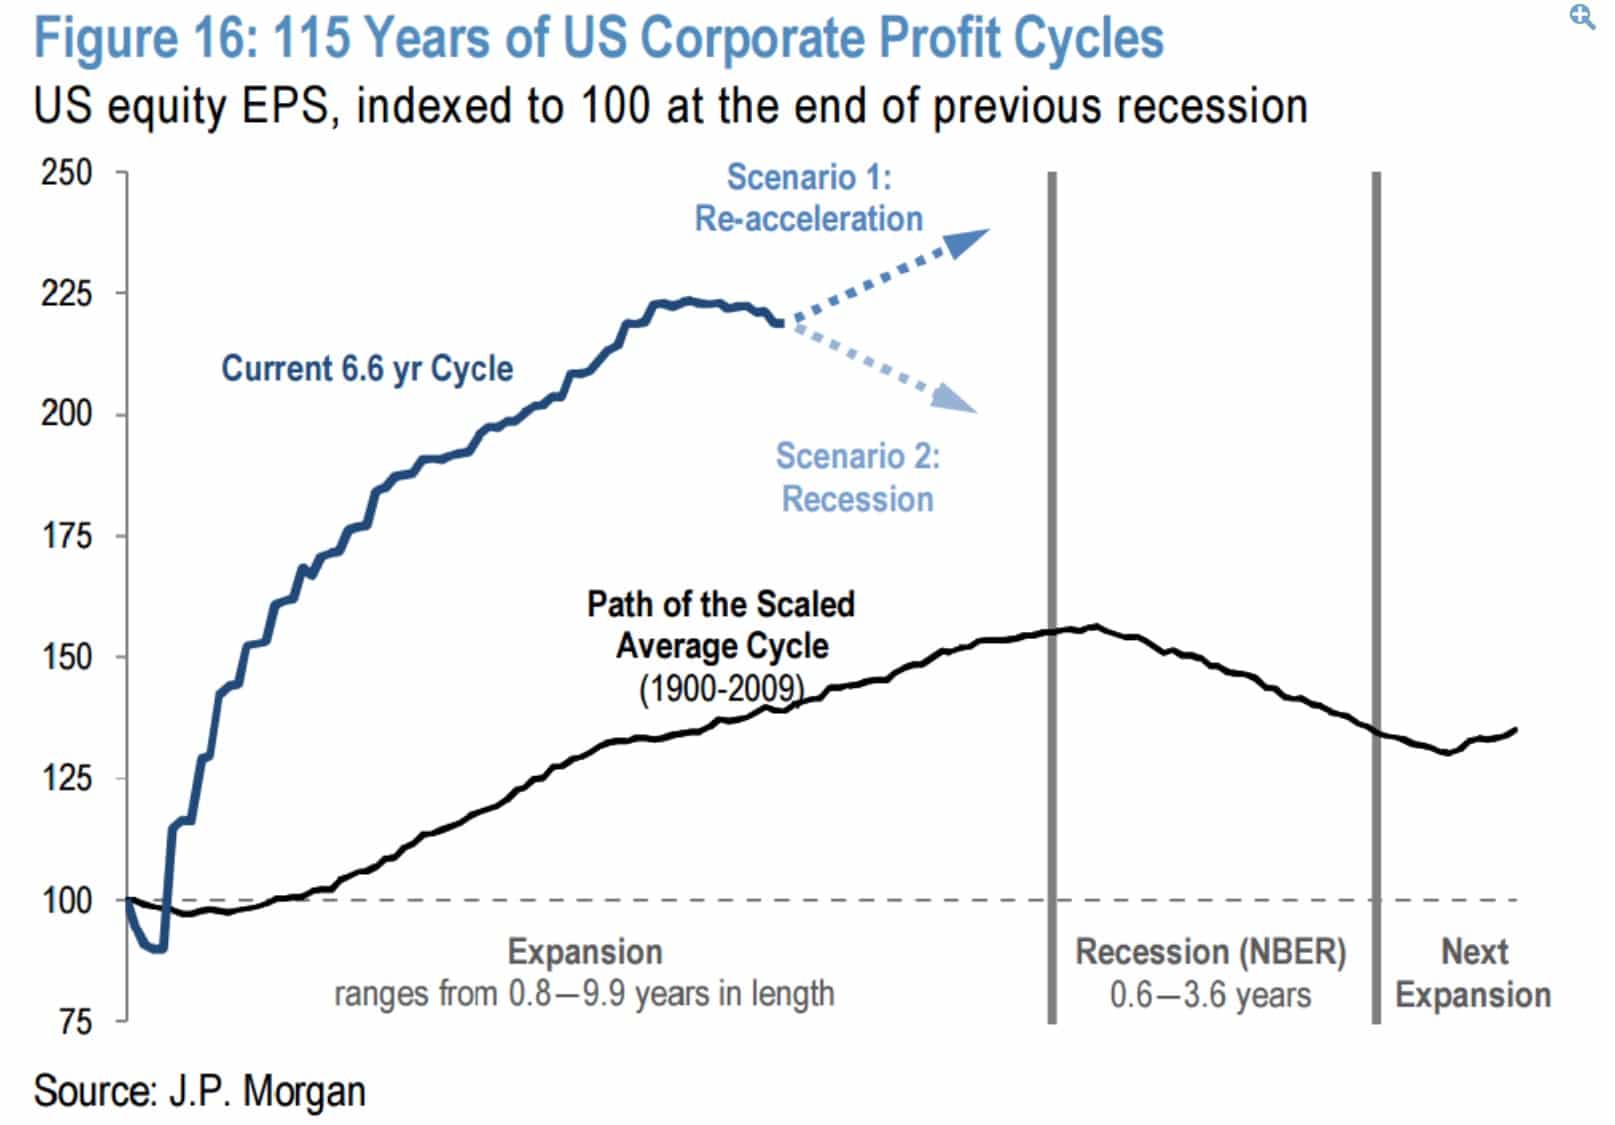 Ciclo de beneficios corporativos en los ultimos 115 años en EEUU